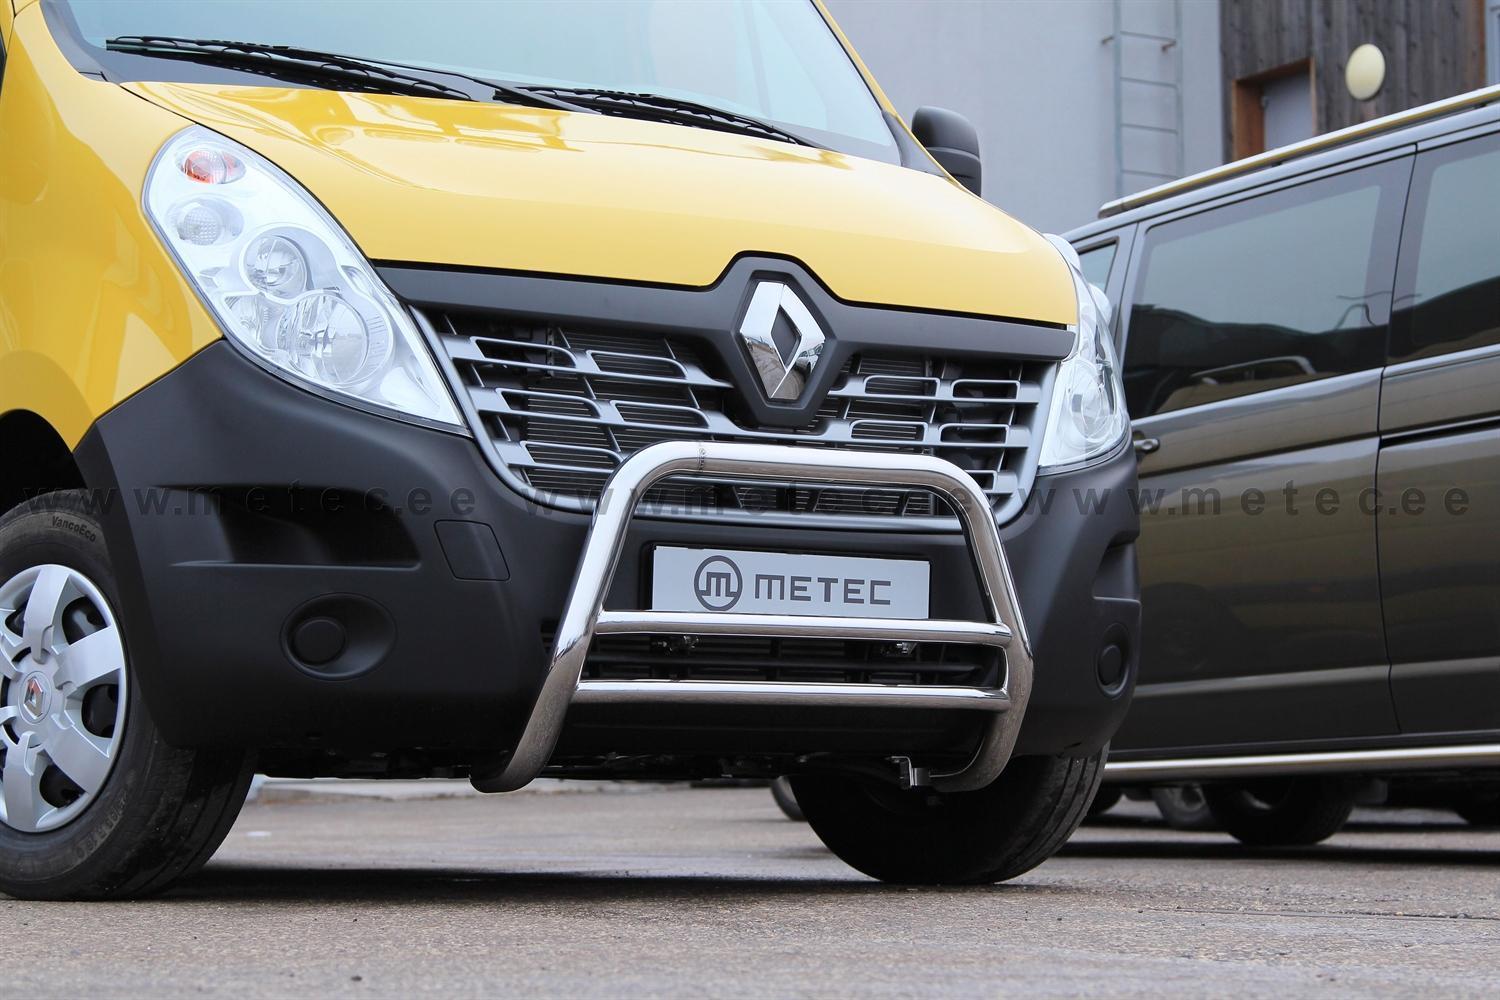 Renault Master EU - Valorauta 2010-2019 (Metec)